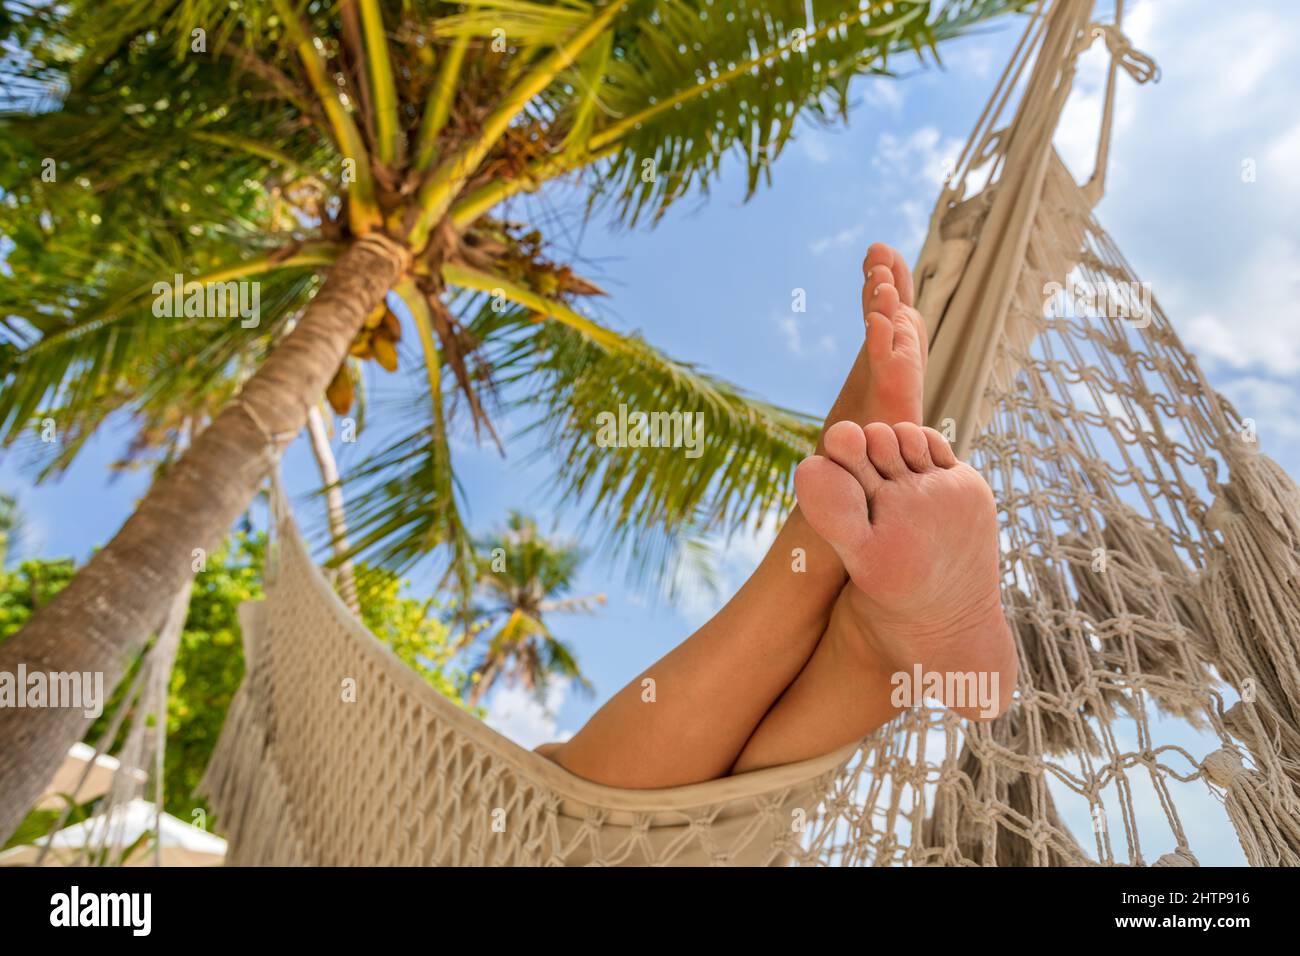 Vacances relaxantes à la plage avec les pieds de la femme dans le hamac entre le cocotier. Complexe hôtelier exotique tropical. Journée ensoleillée et chaude avec ciel bleu. Banque D'Images